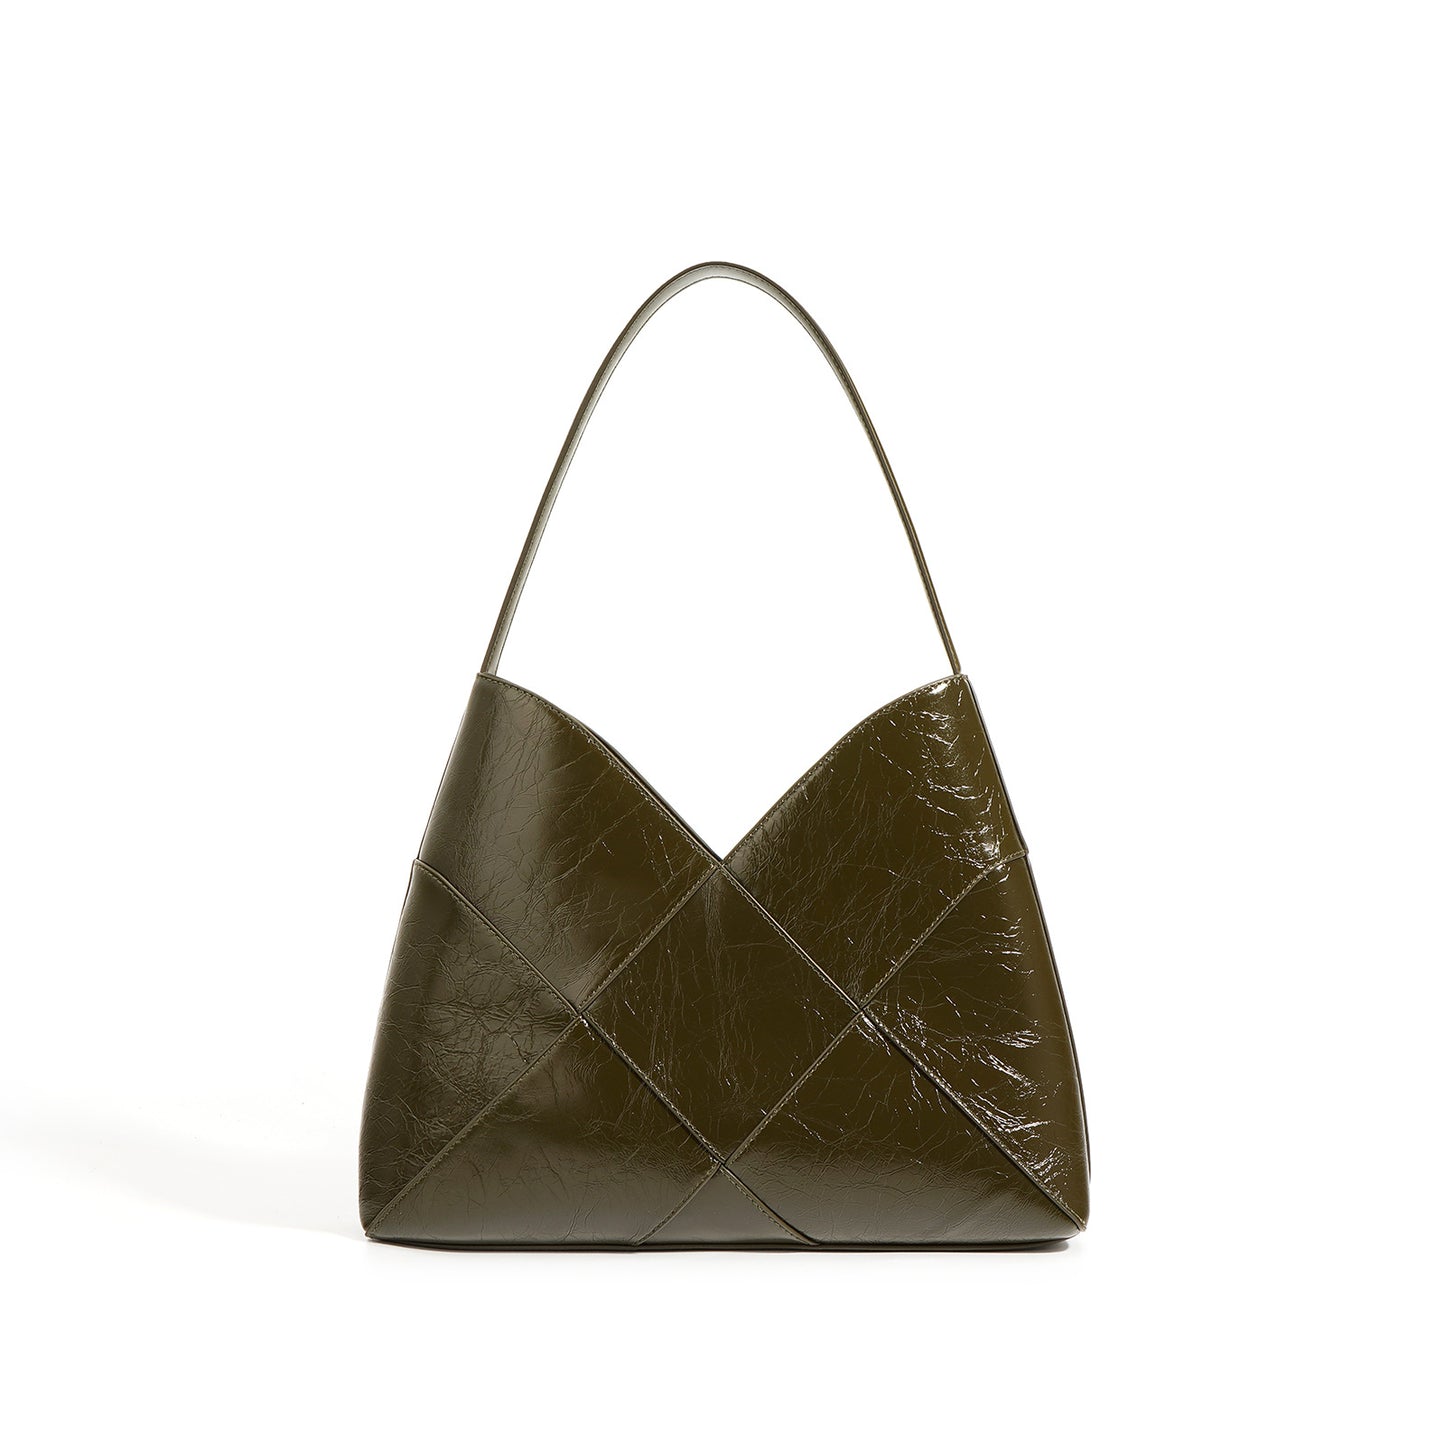 Woven Leather Handbag Daily Tote Bag